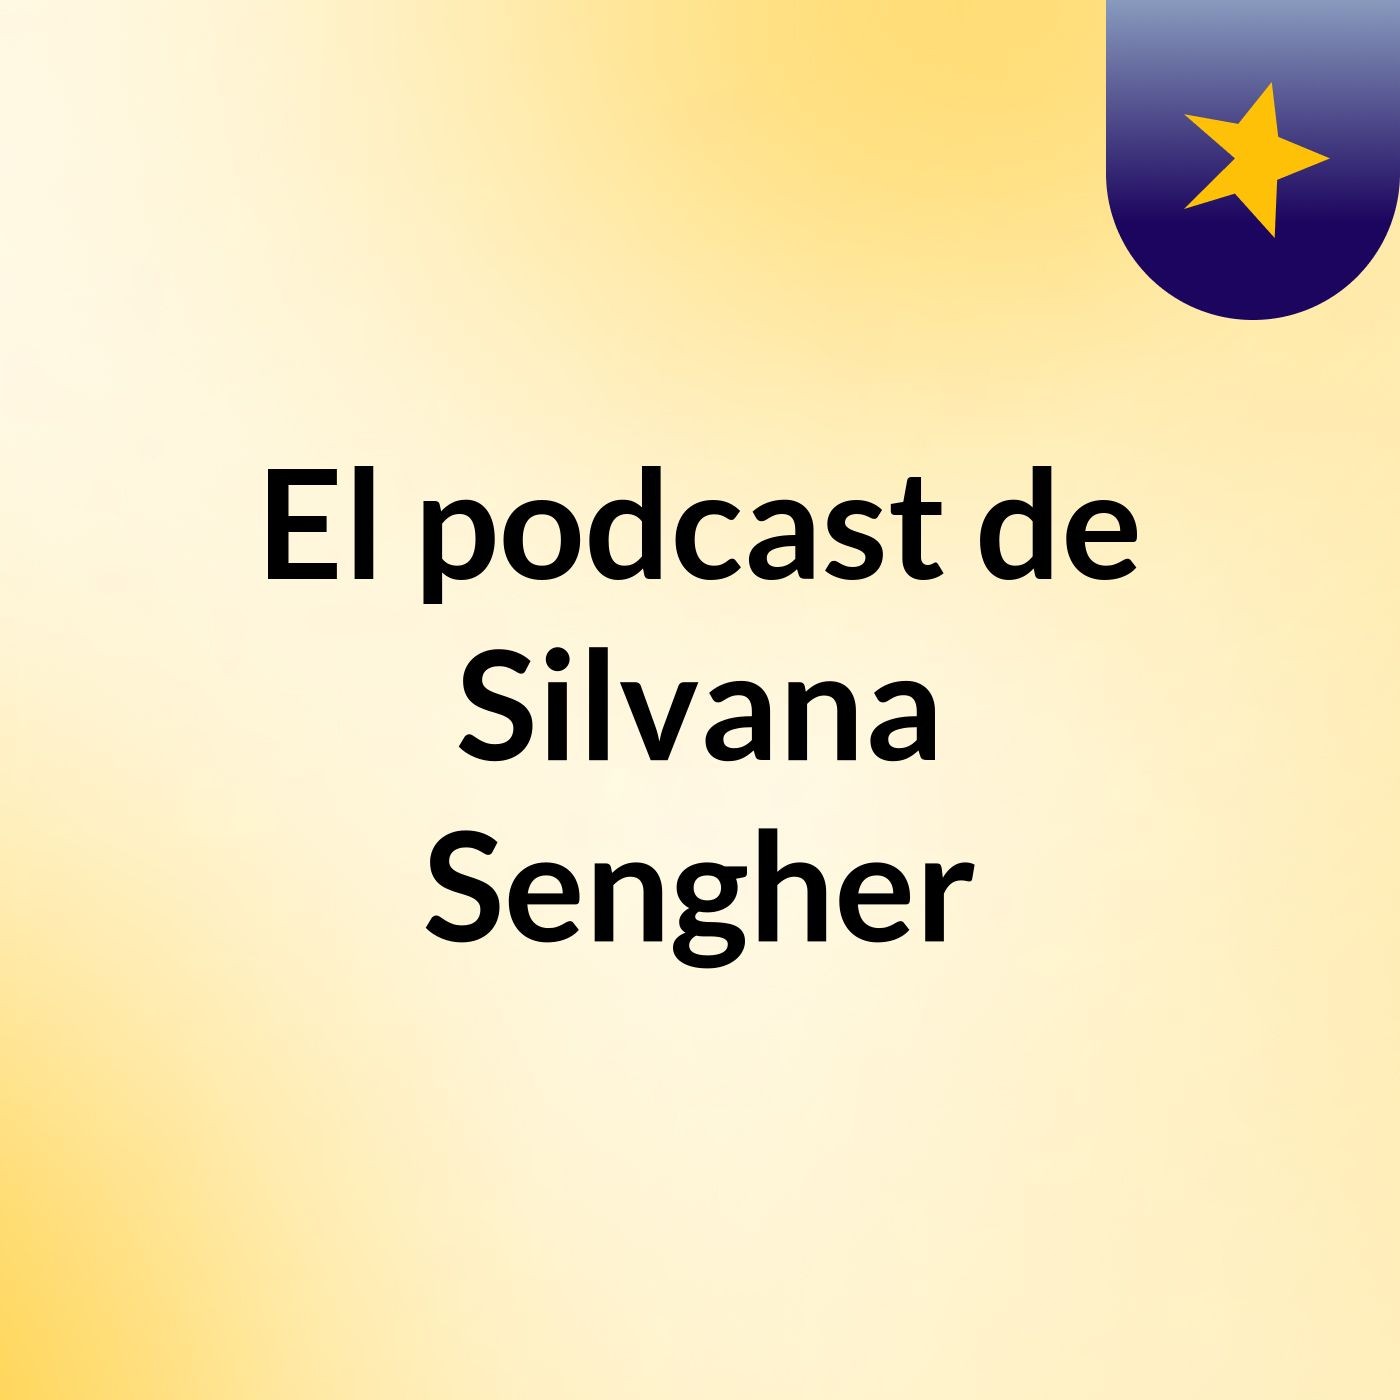 El podcast de Silvana Sengher